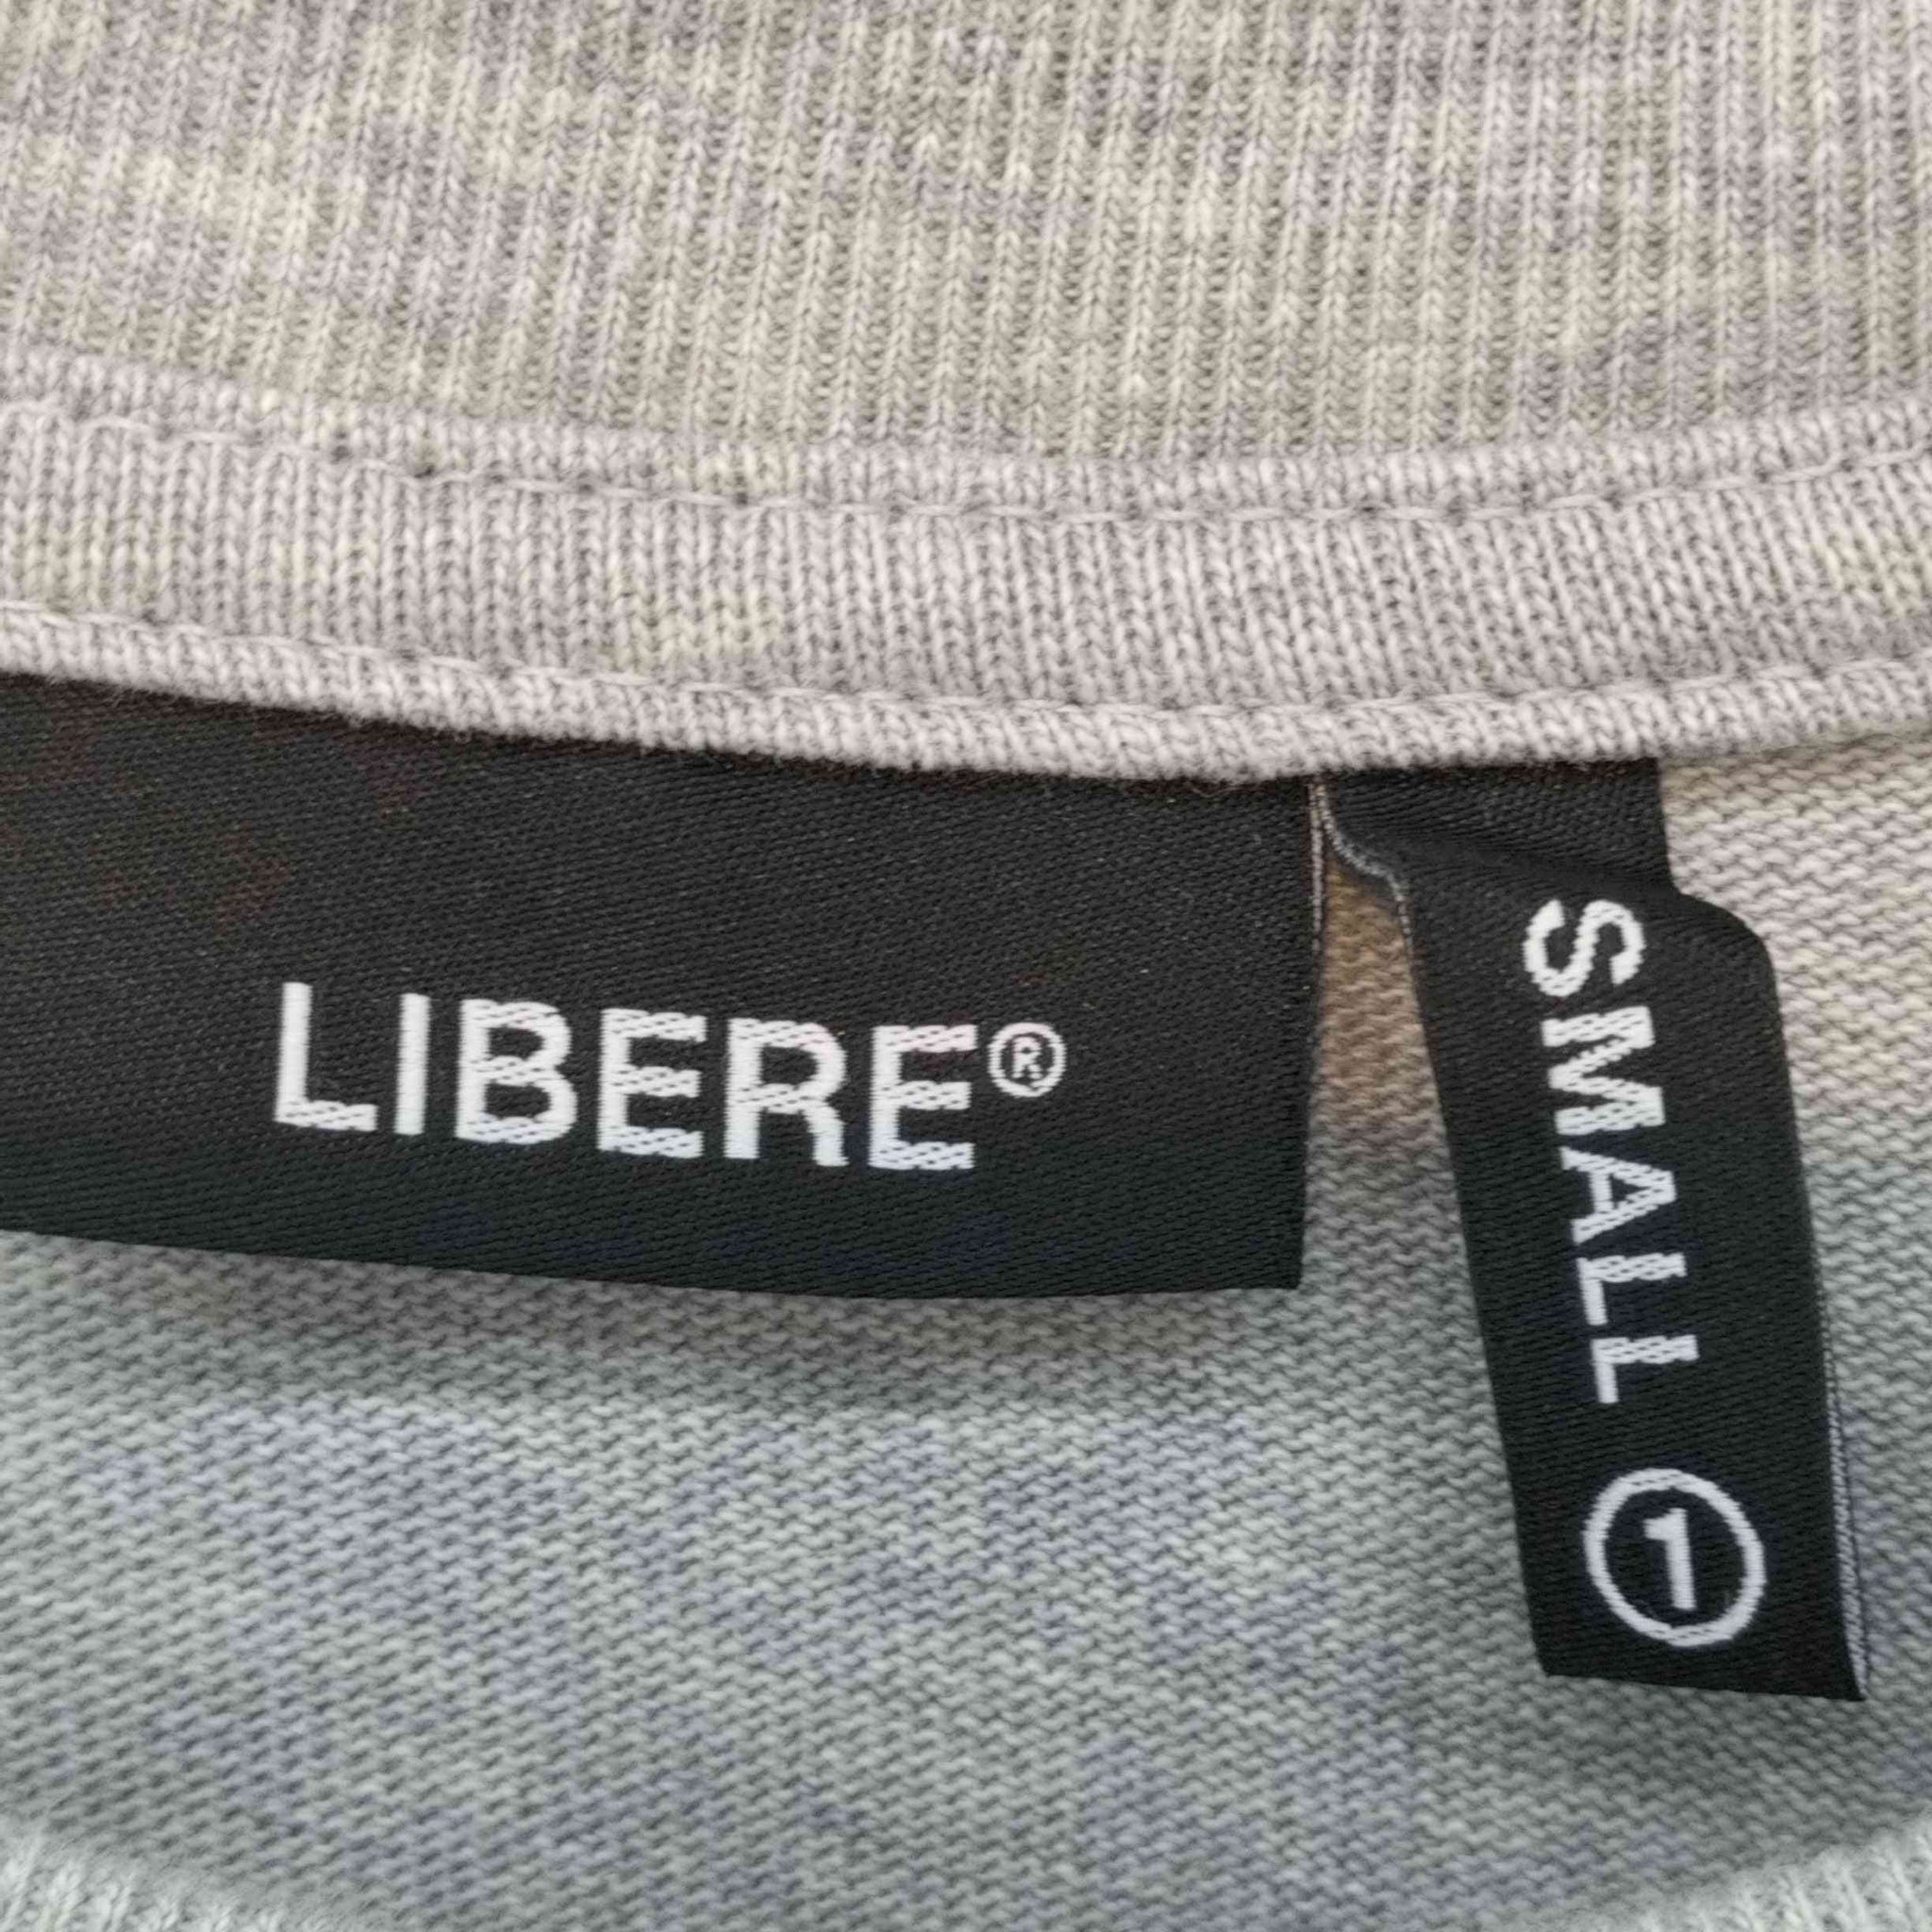 LIBERE(リベーレ)Strap longsleeve shirts